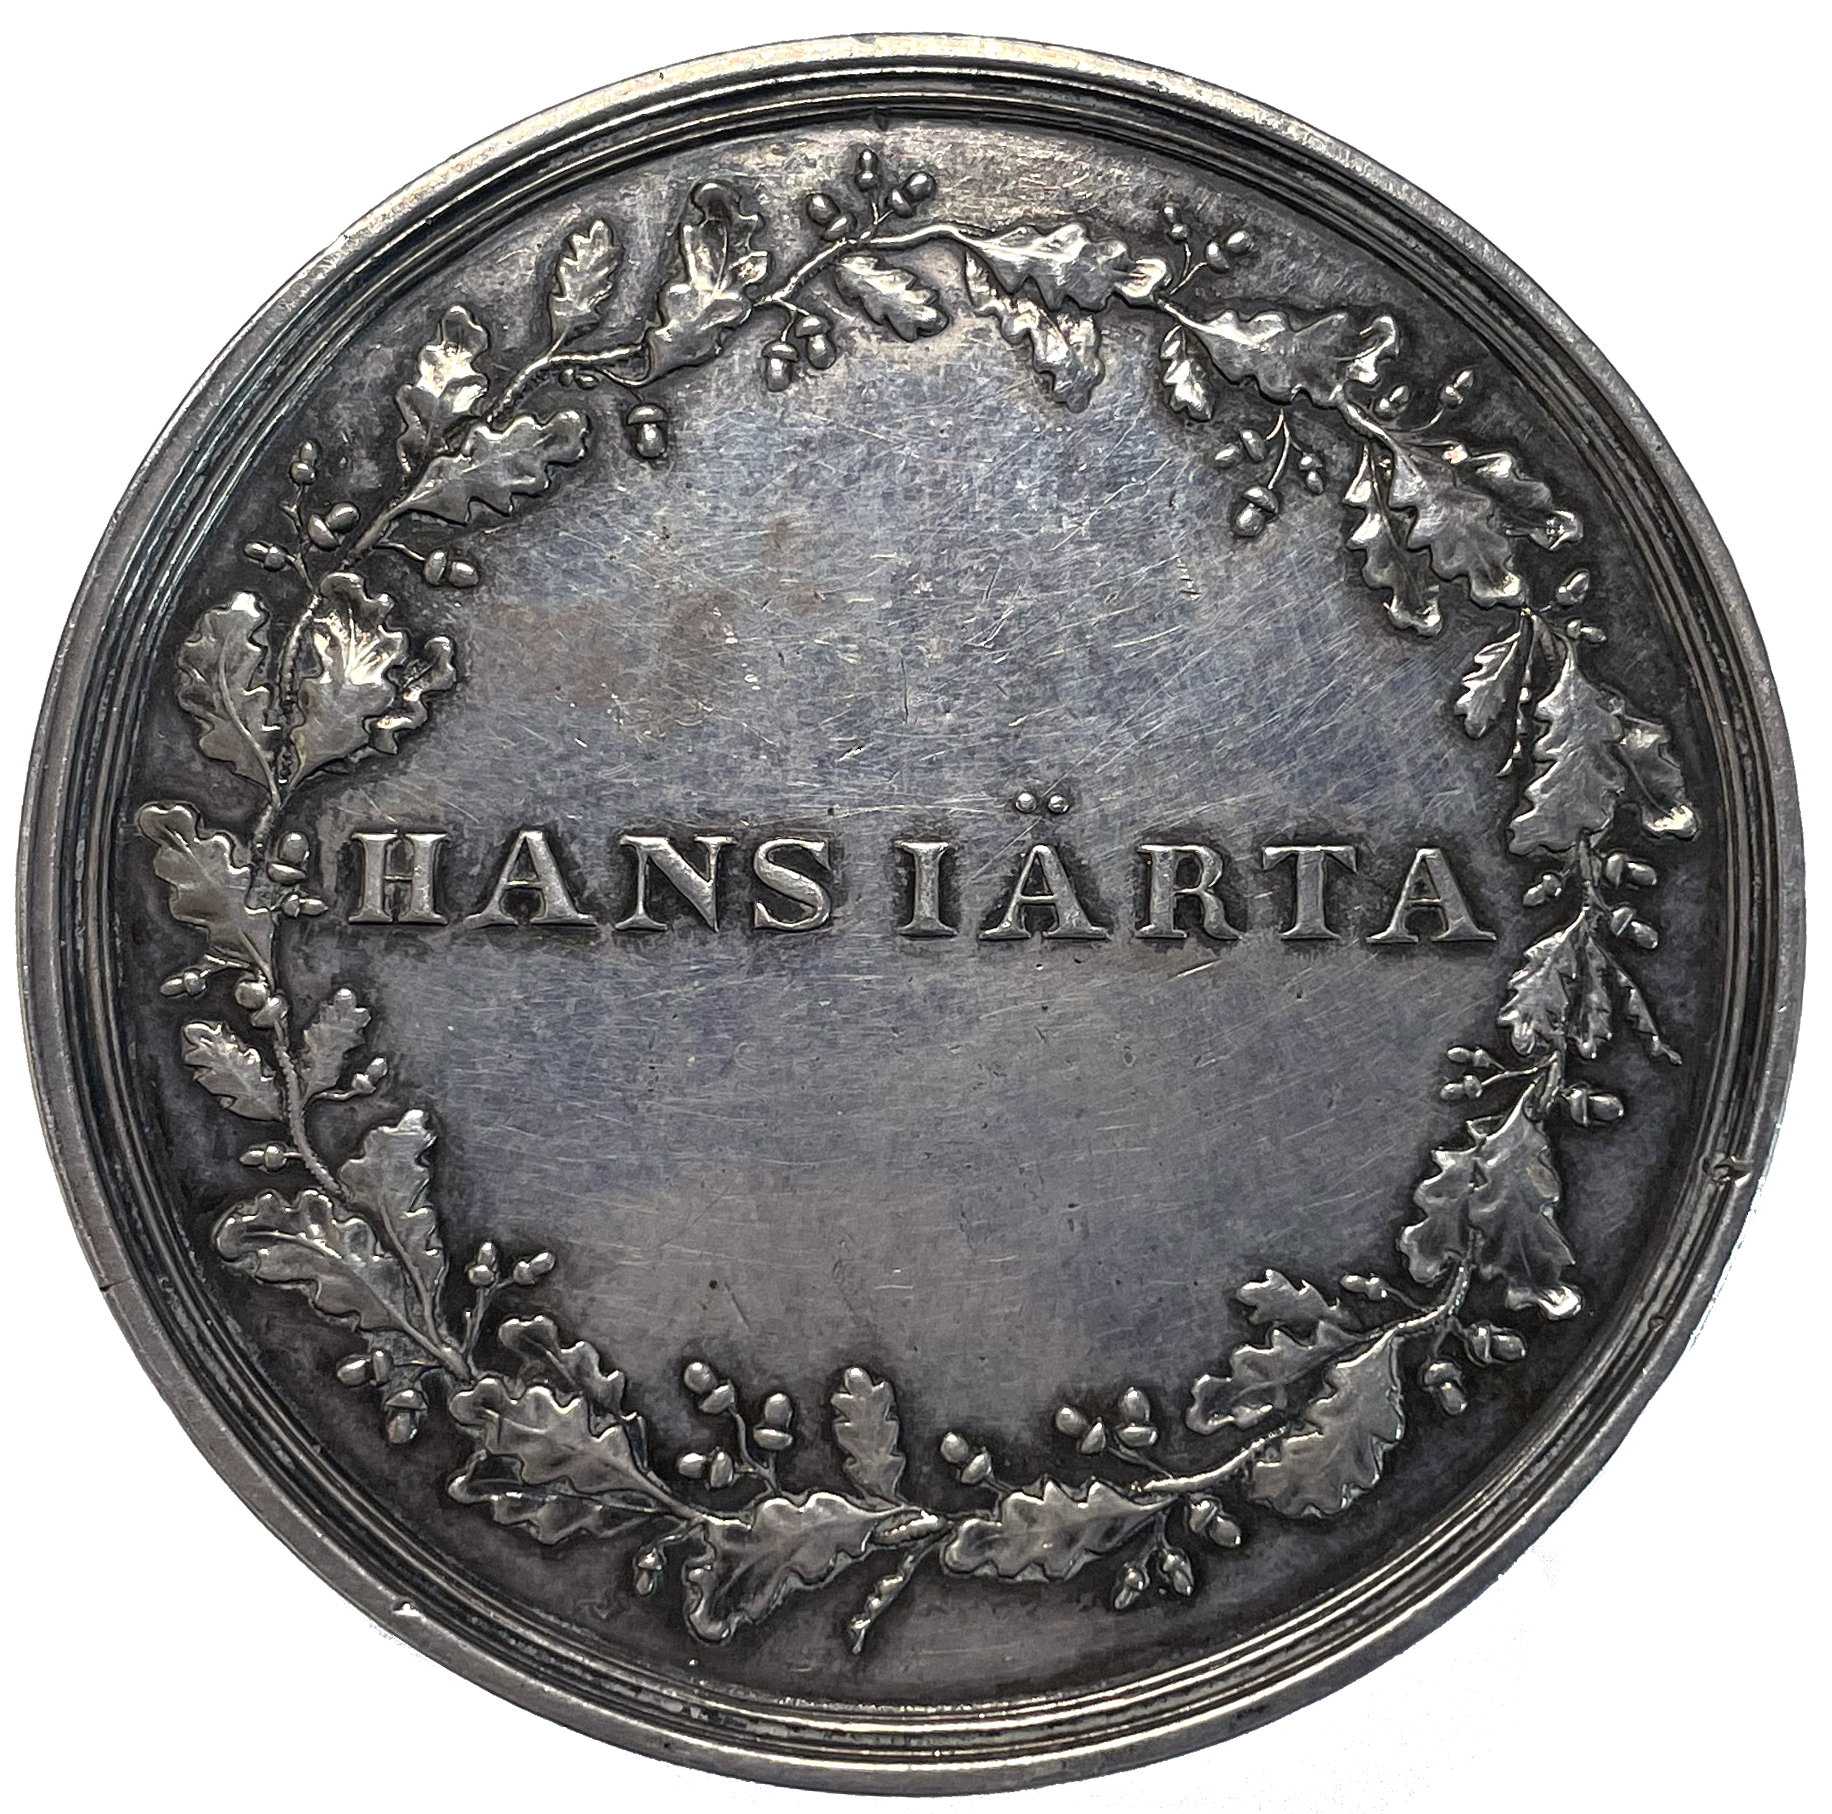 Hans Järta 1800 (avsade sig sitt adleskap och namnet Hierta) - Mycket sällsynt - RR